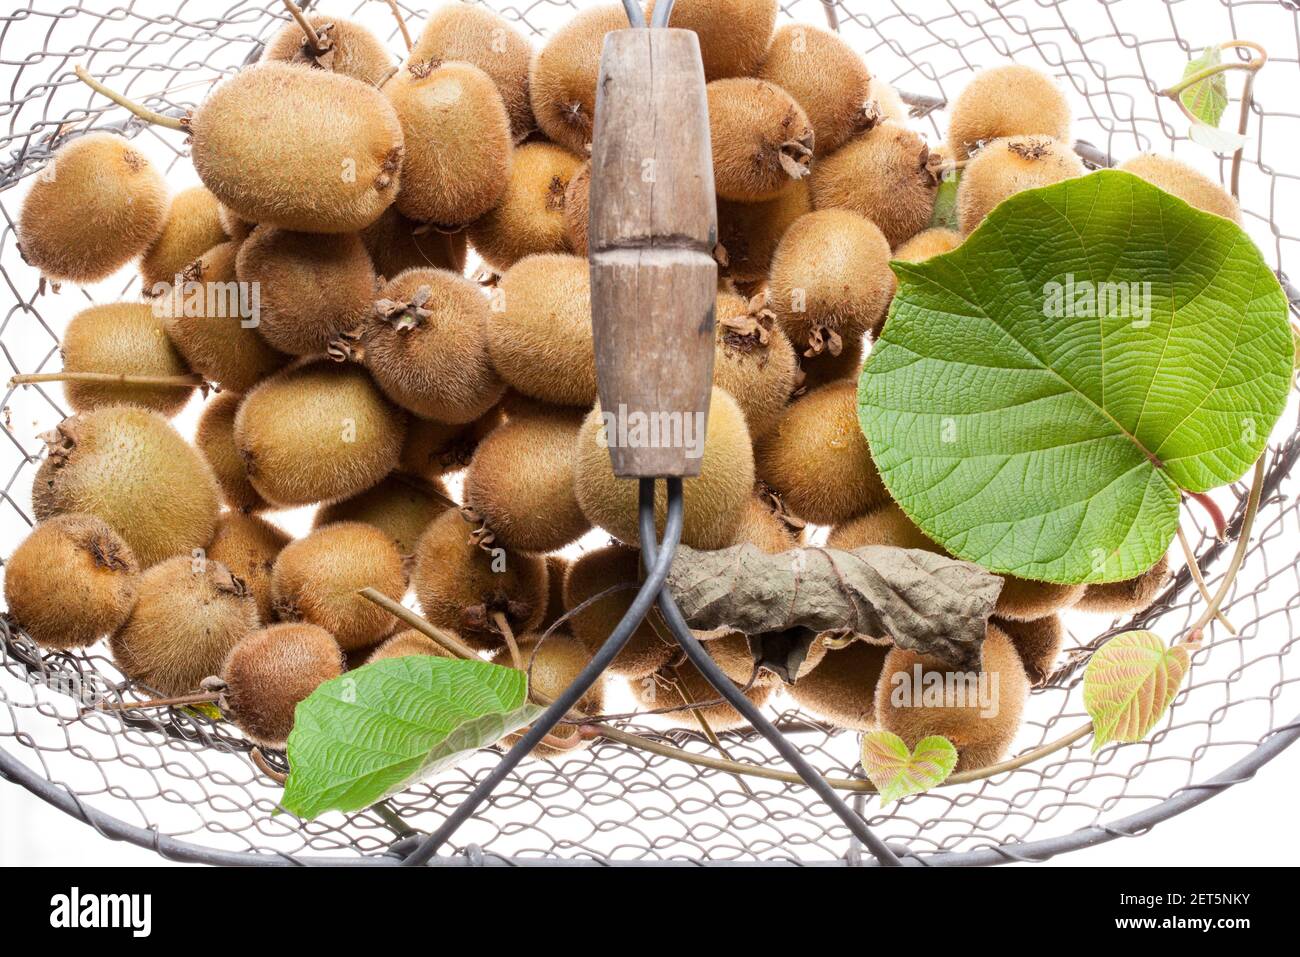 Kiwifruit (Actinidia deliciosa) droits Royaume-Uni et IRLANDAIS UNIQUEMENT, AUTRES DROITS CONTACTEZ EWASTOCK.COM Banque D'Images